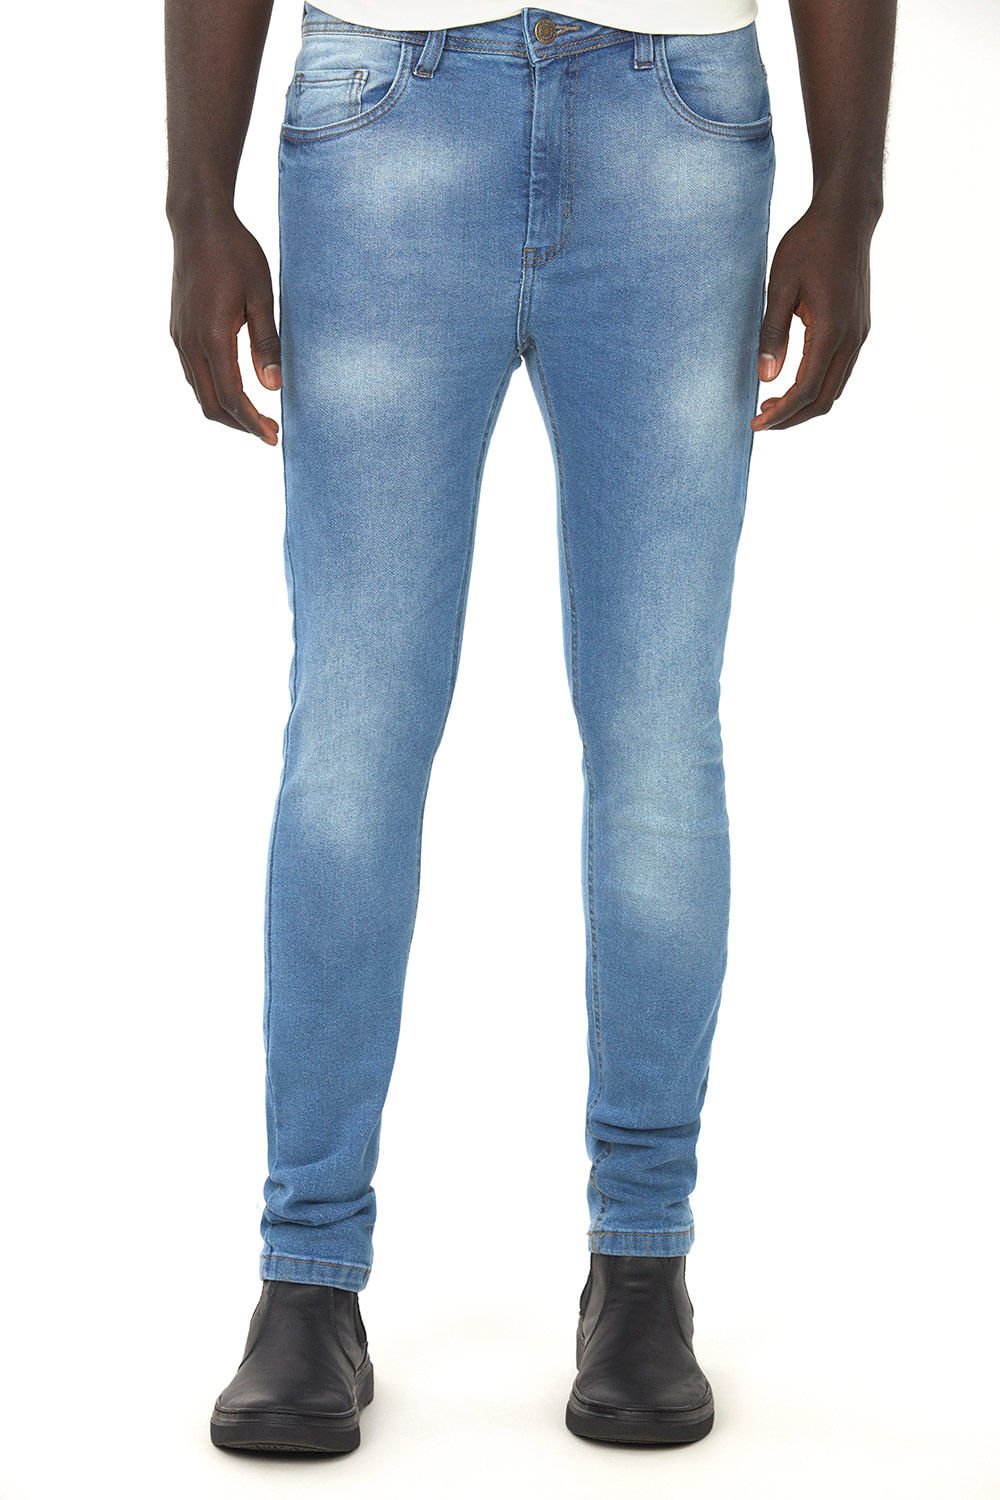 Calça Masculina Jeans Médio Polo Wear